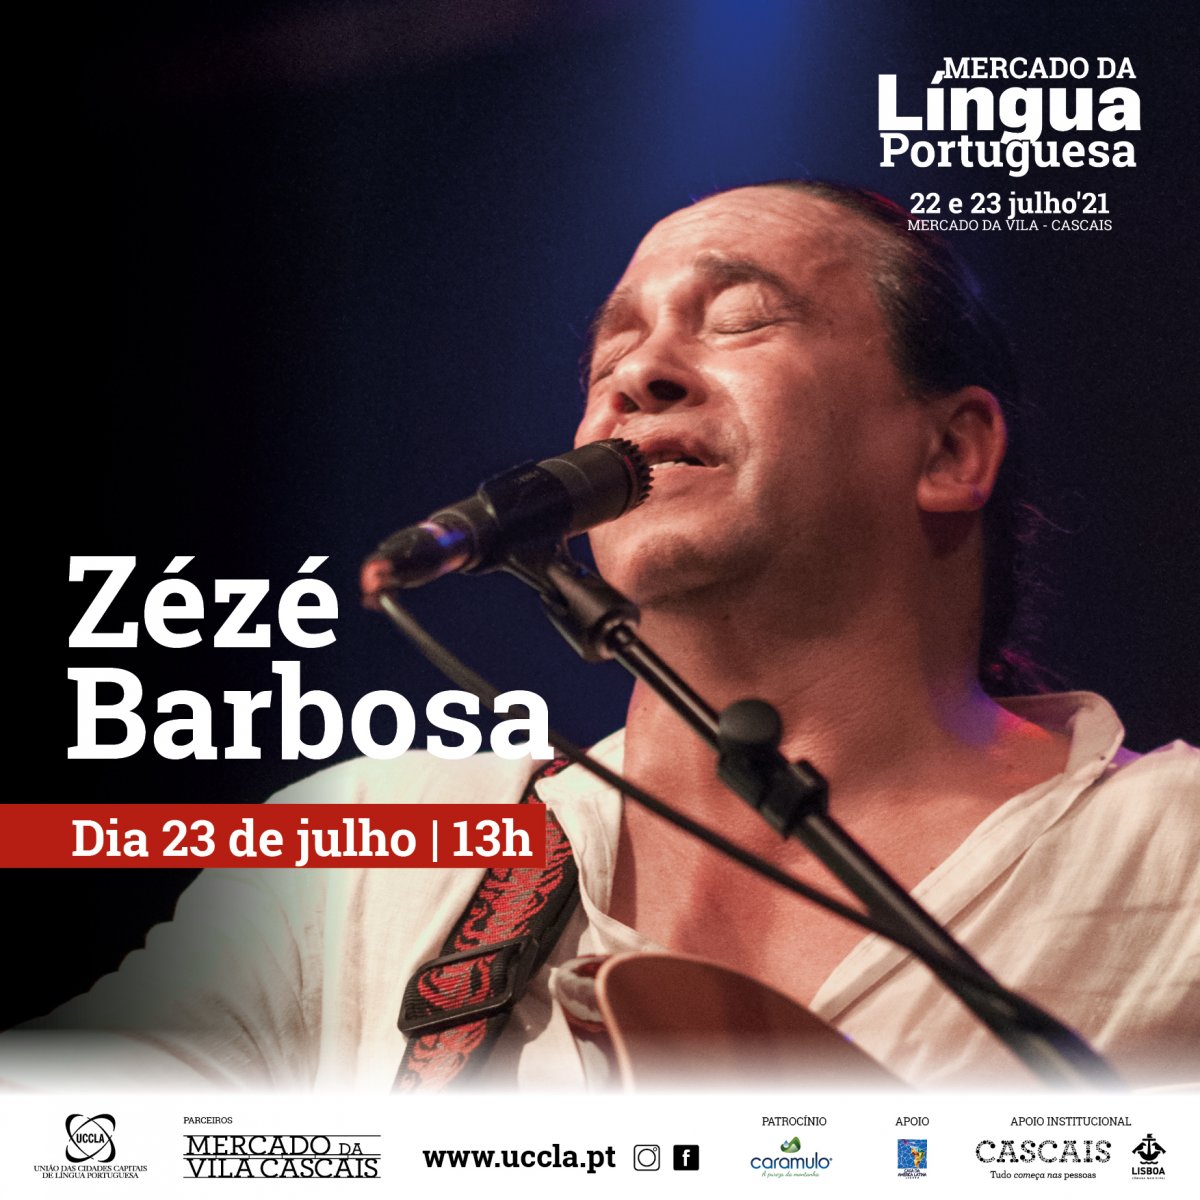 Zeze Barbosa